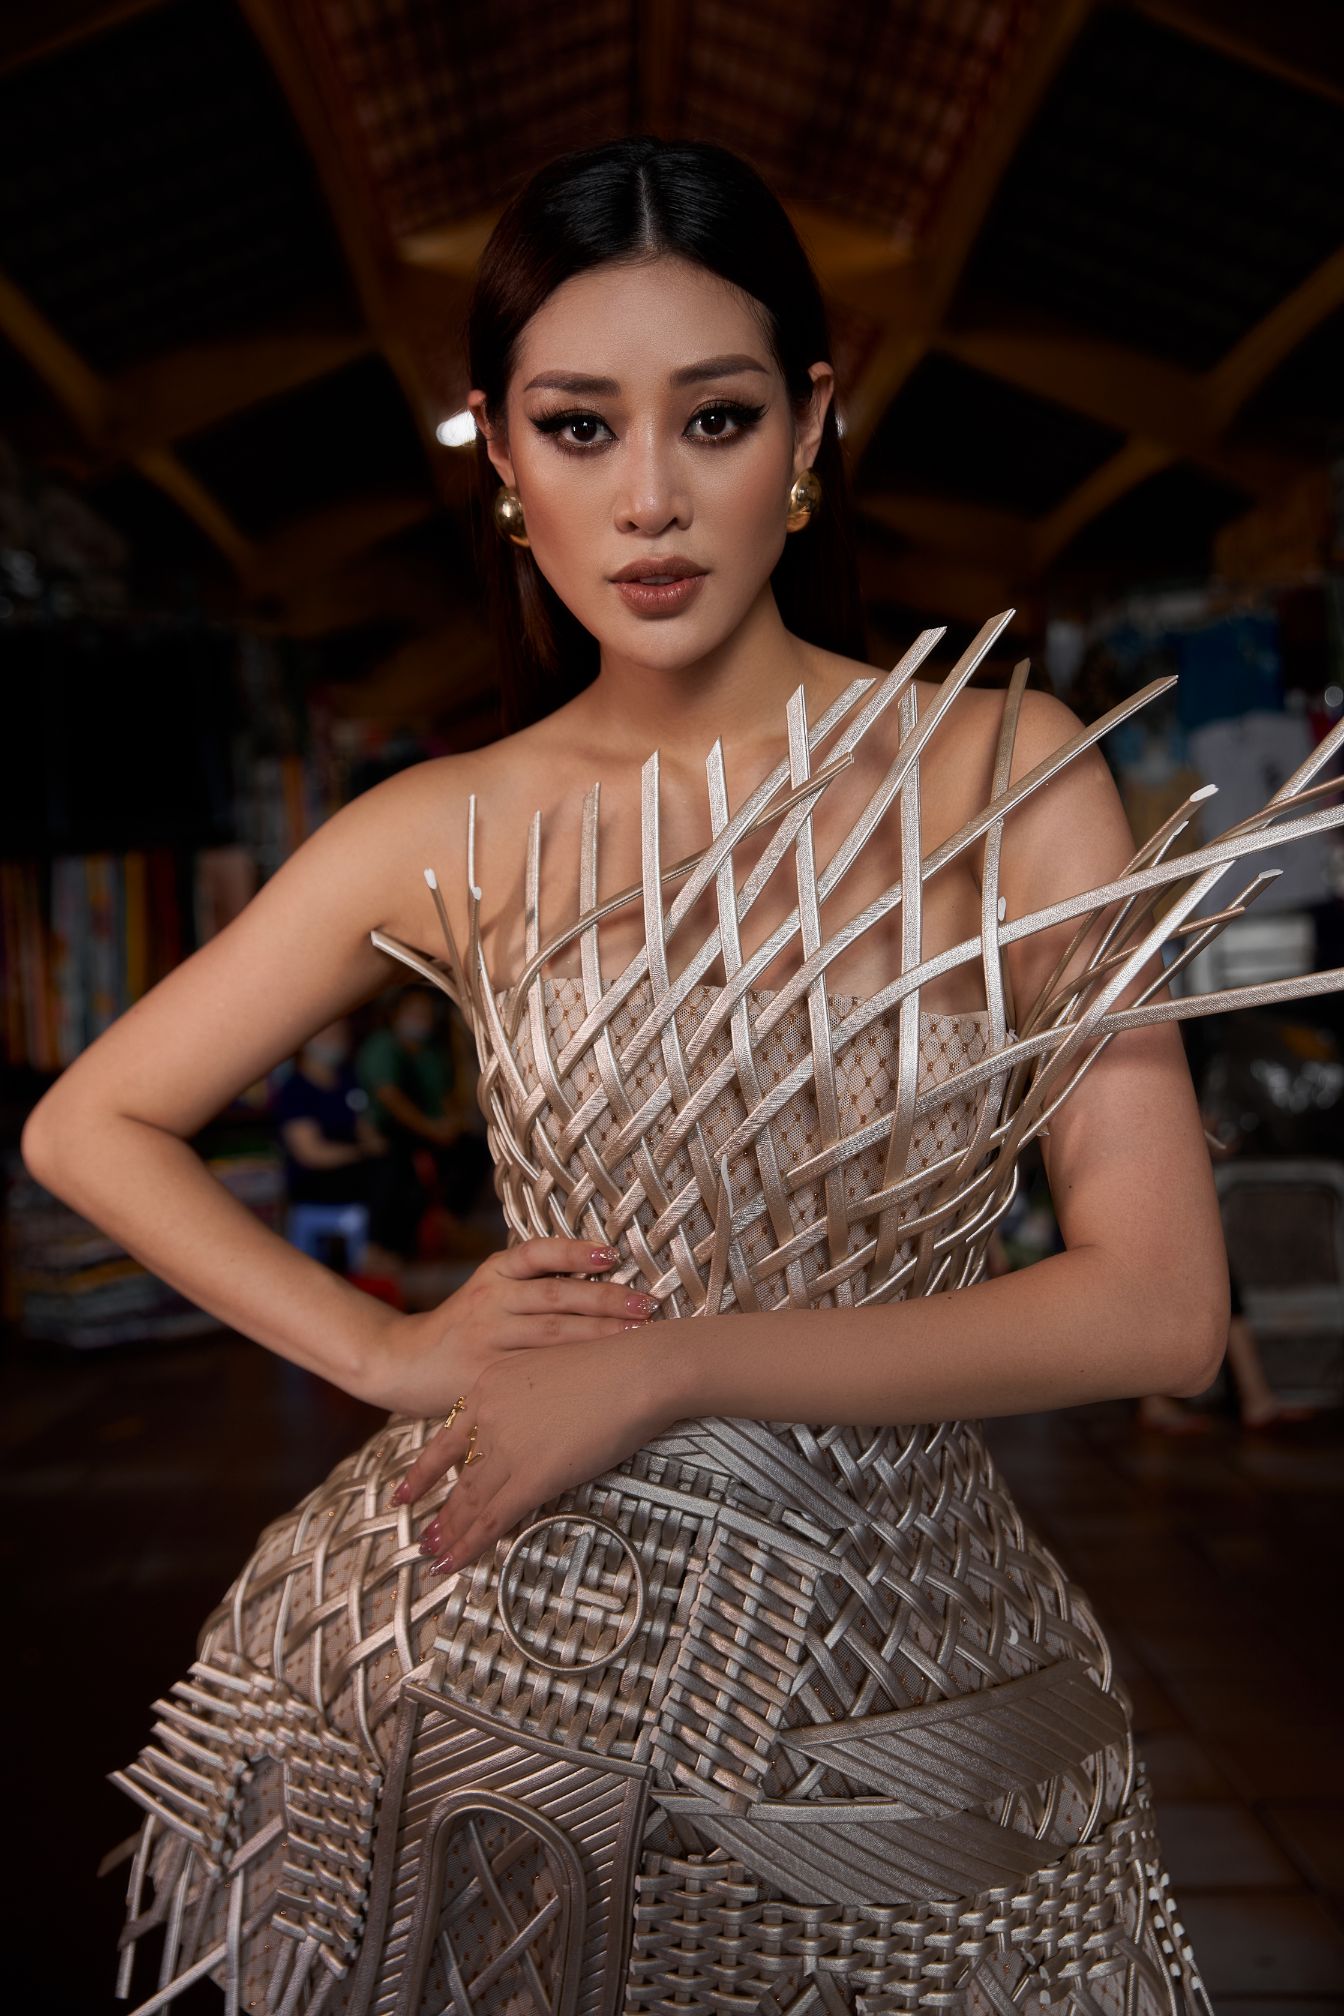 Hoa hau Khanh Van7 Hoa hậu Khánh Vân quảng bá TP.HCM thông qua trang phục tại Miss Universe